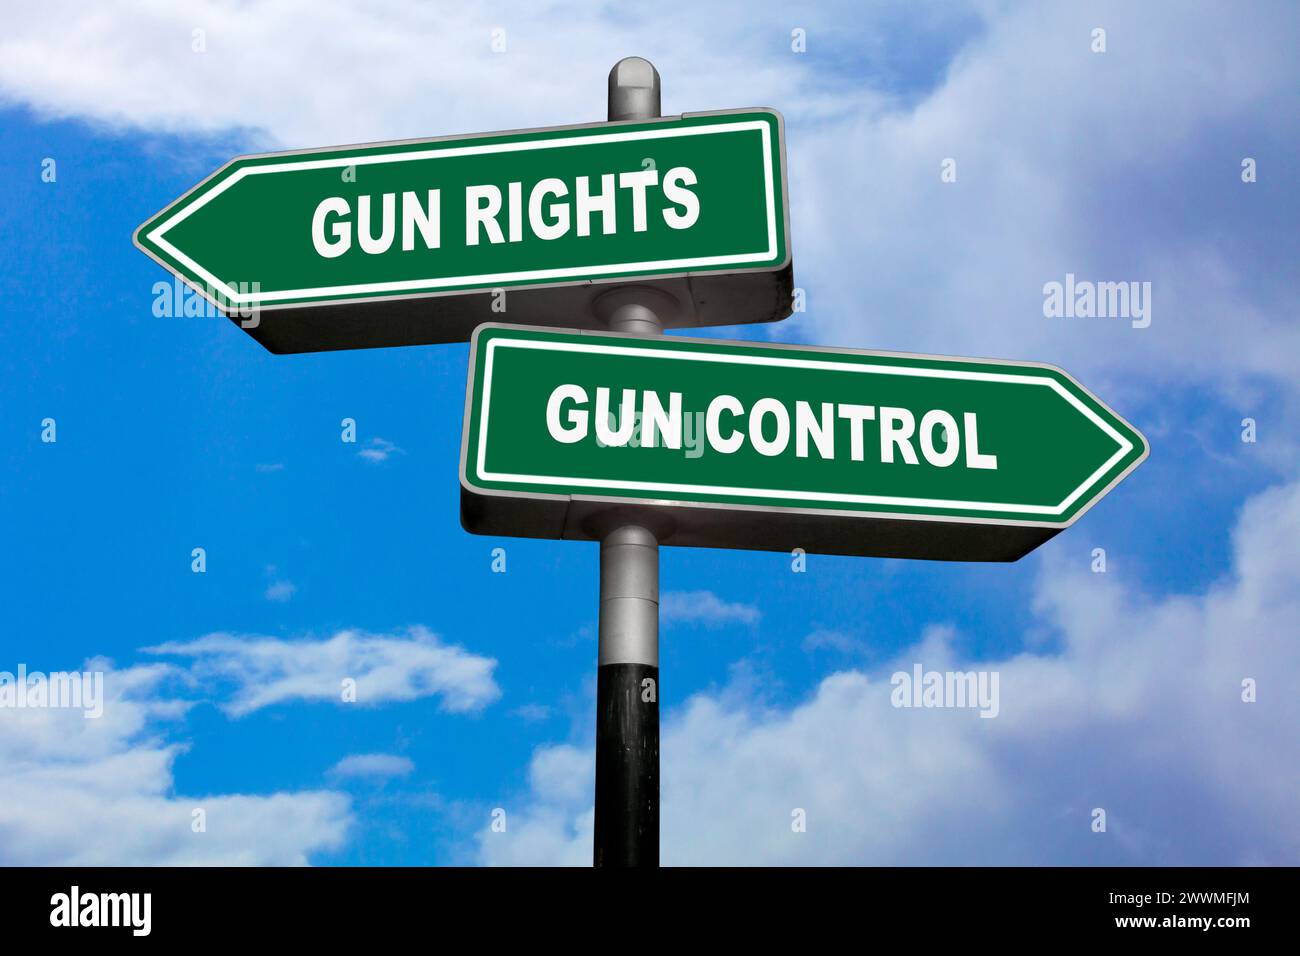 Zwei Richtungsschilder, eines nach links (Waffenrechte) und das andere nach rechts (Waffenkontrolle). Stockfoto